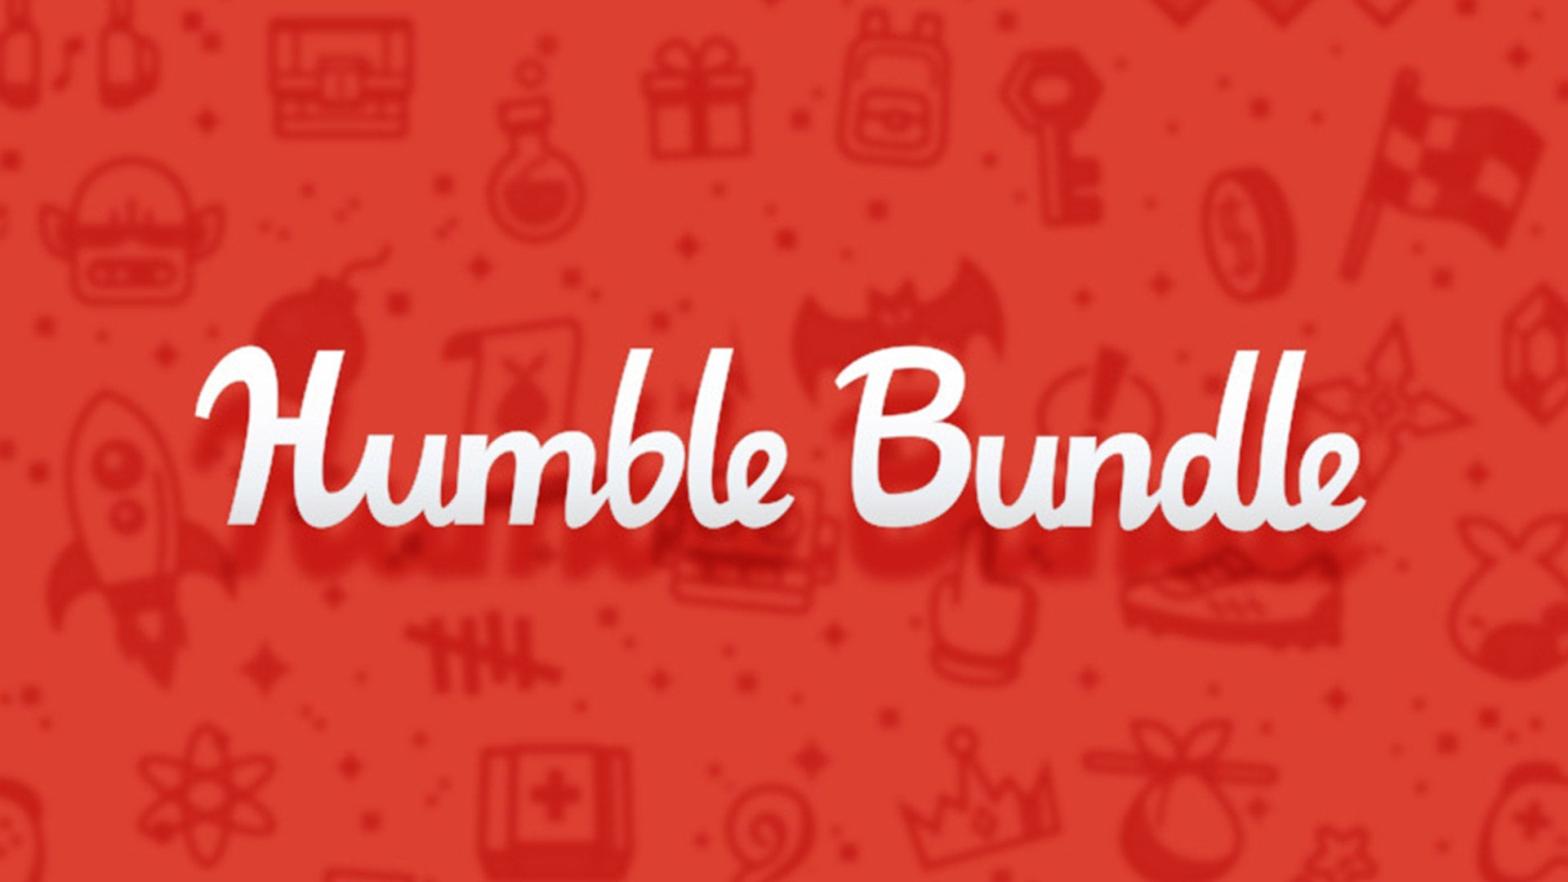 Image: Humble Bundle